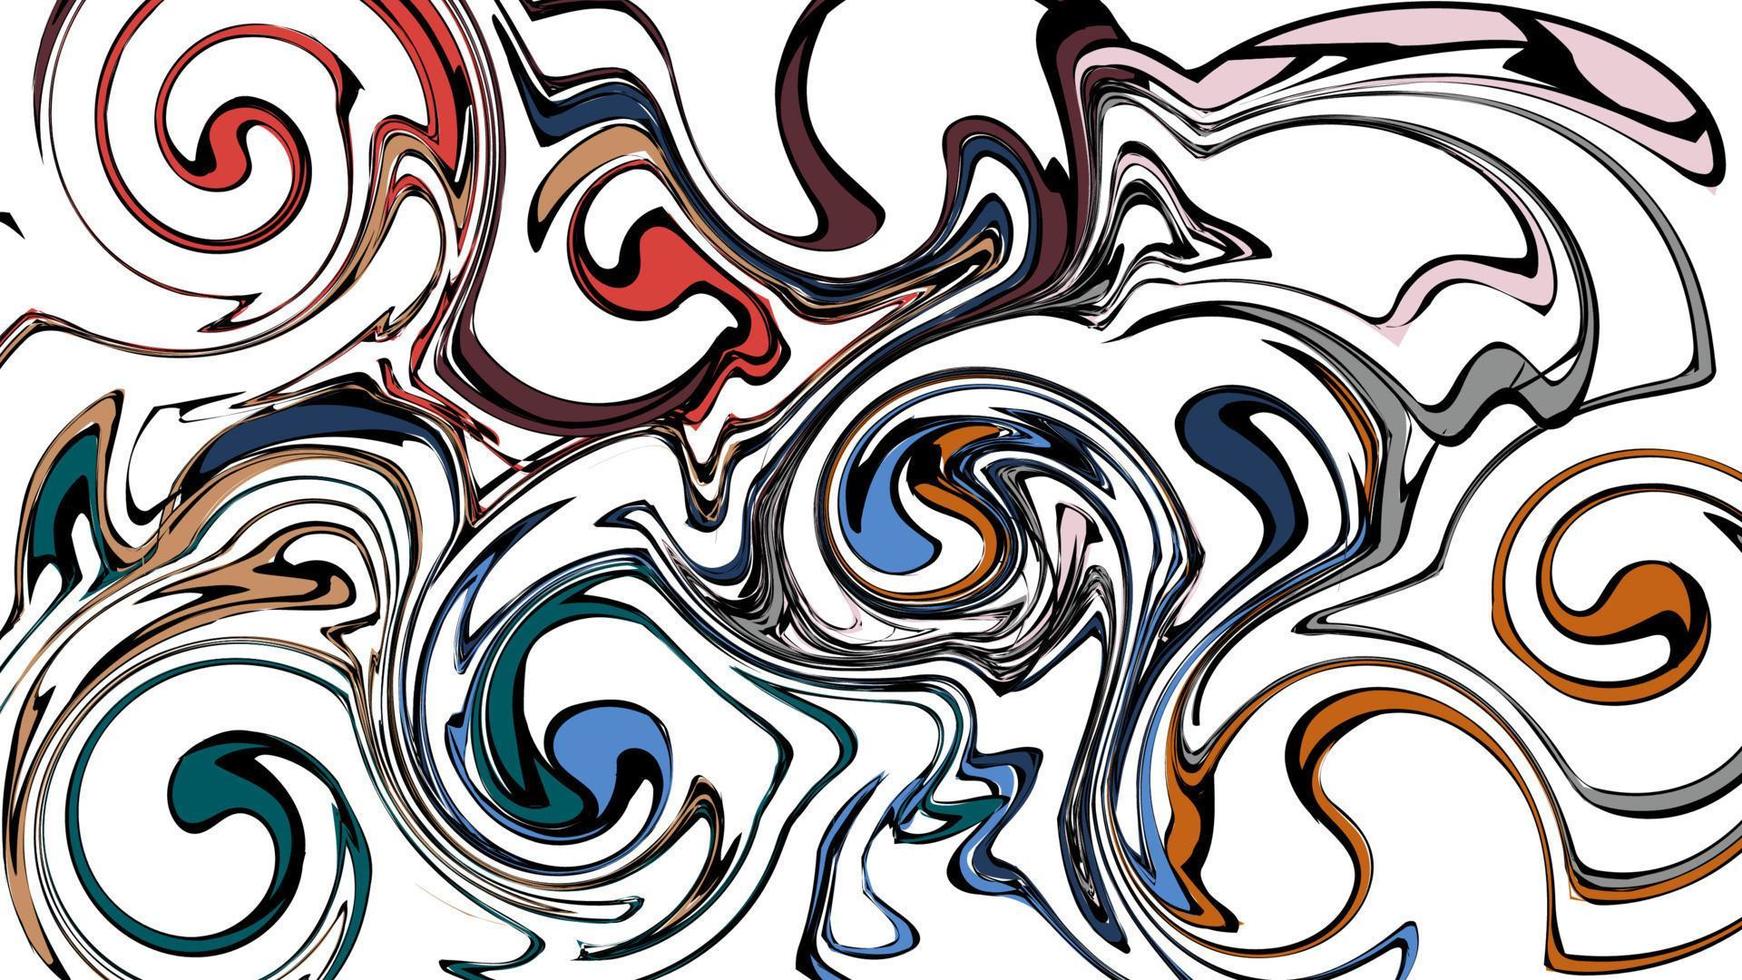 mehrfarbiger abstrakter hintergrund aus verschiedenen linien und wellenbändern aus spritzern und energieausbrüchen, die magisch elektrisch funkeln. Textur. Vektor-Illustration vektor